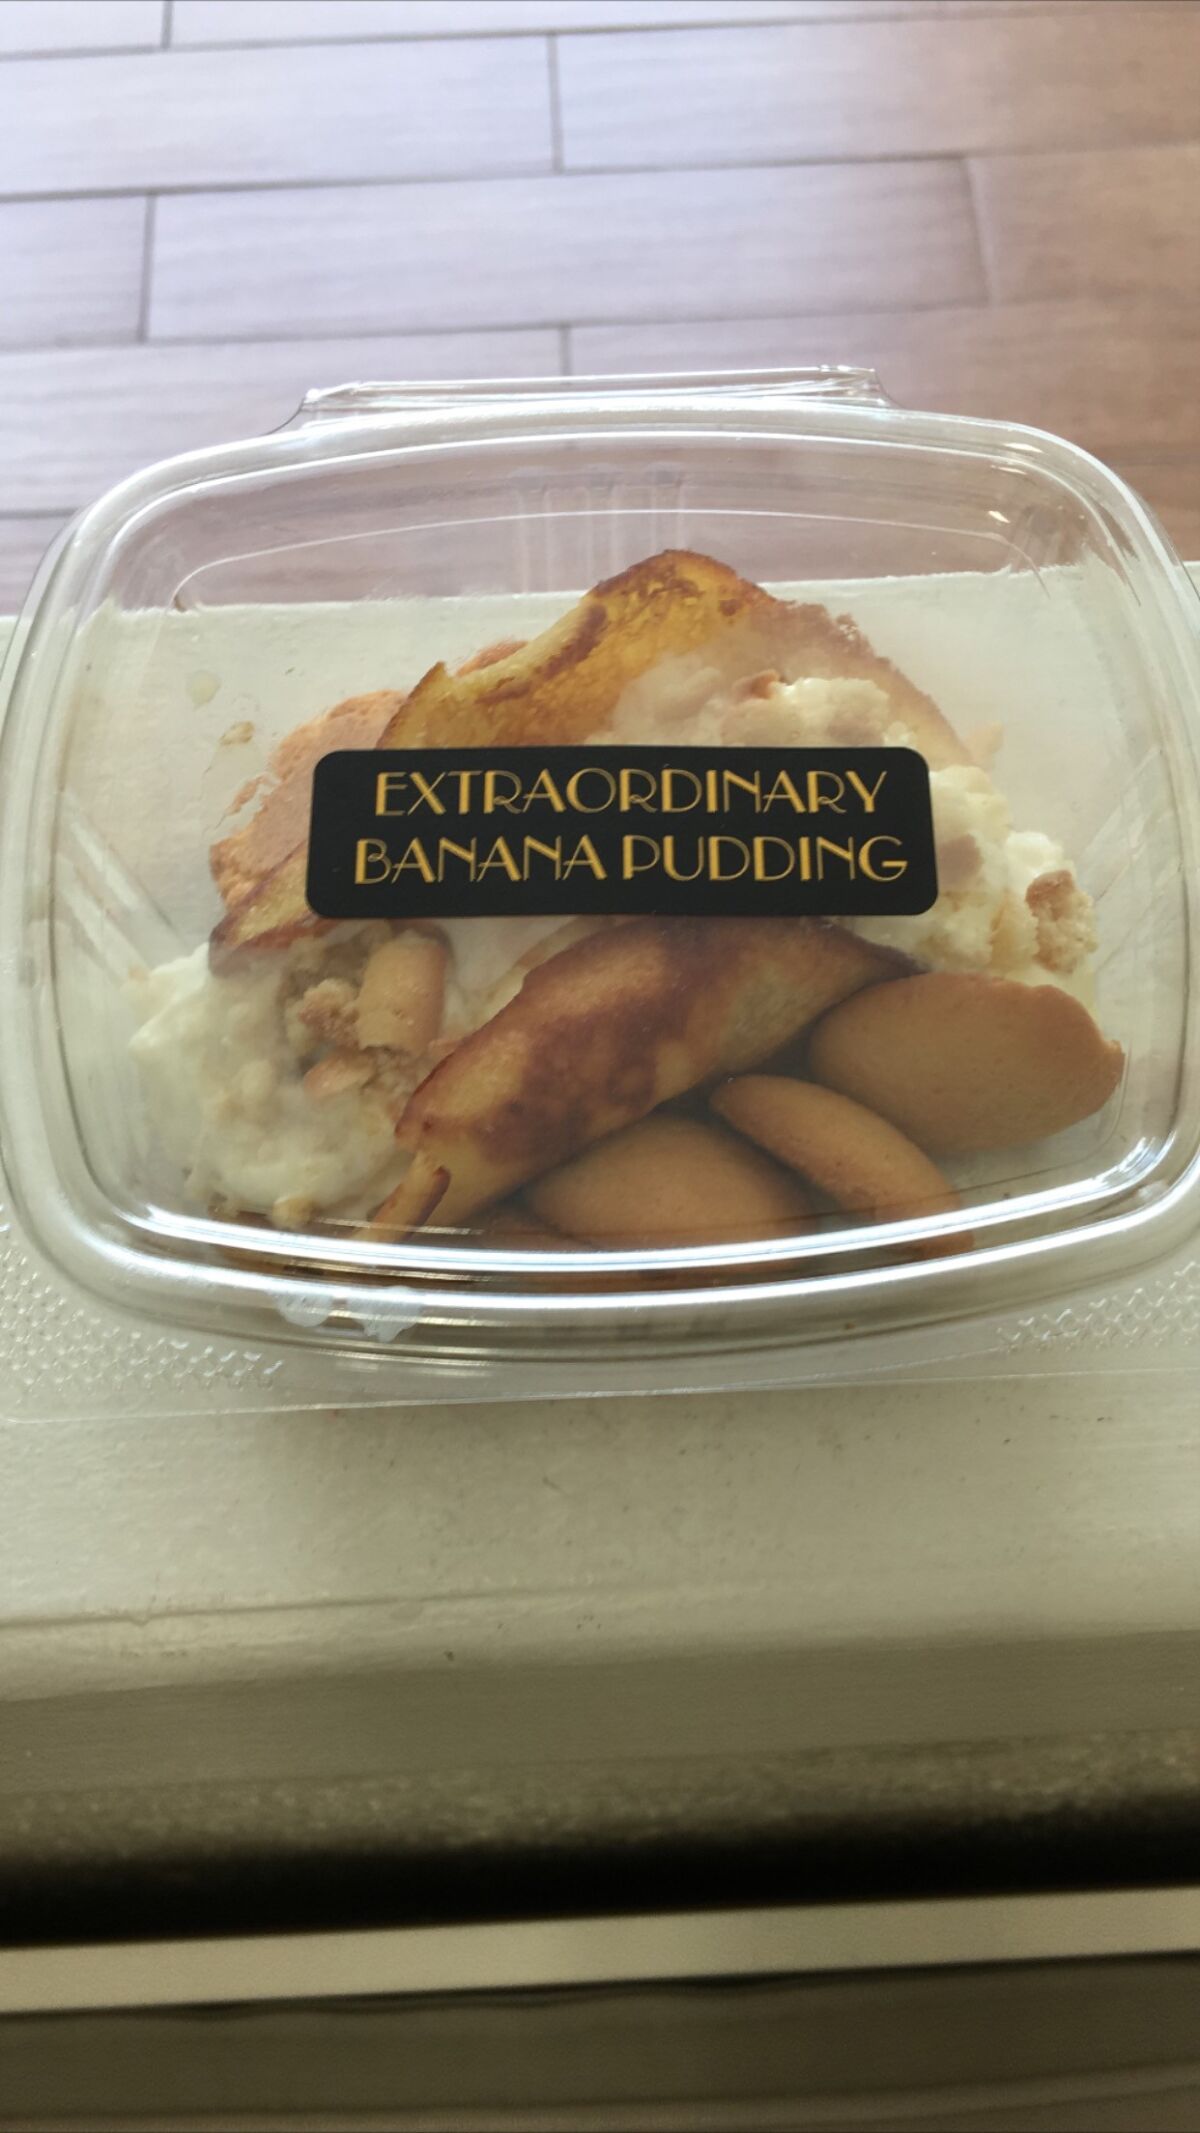 A treat from Extraordinary Banana Pudding in La Mesa. 